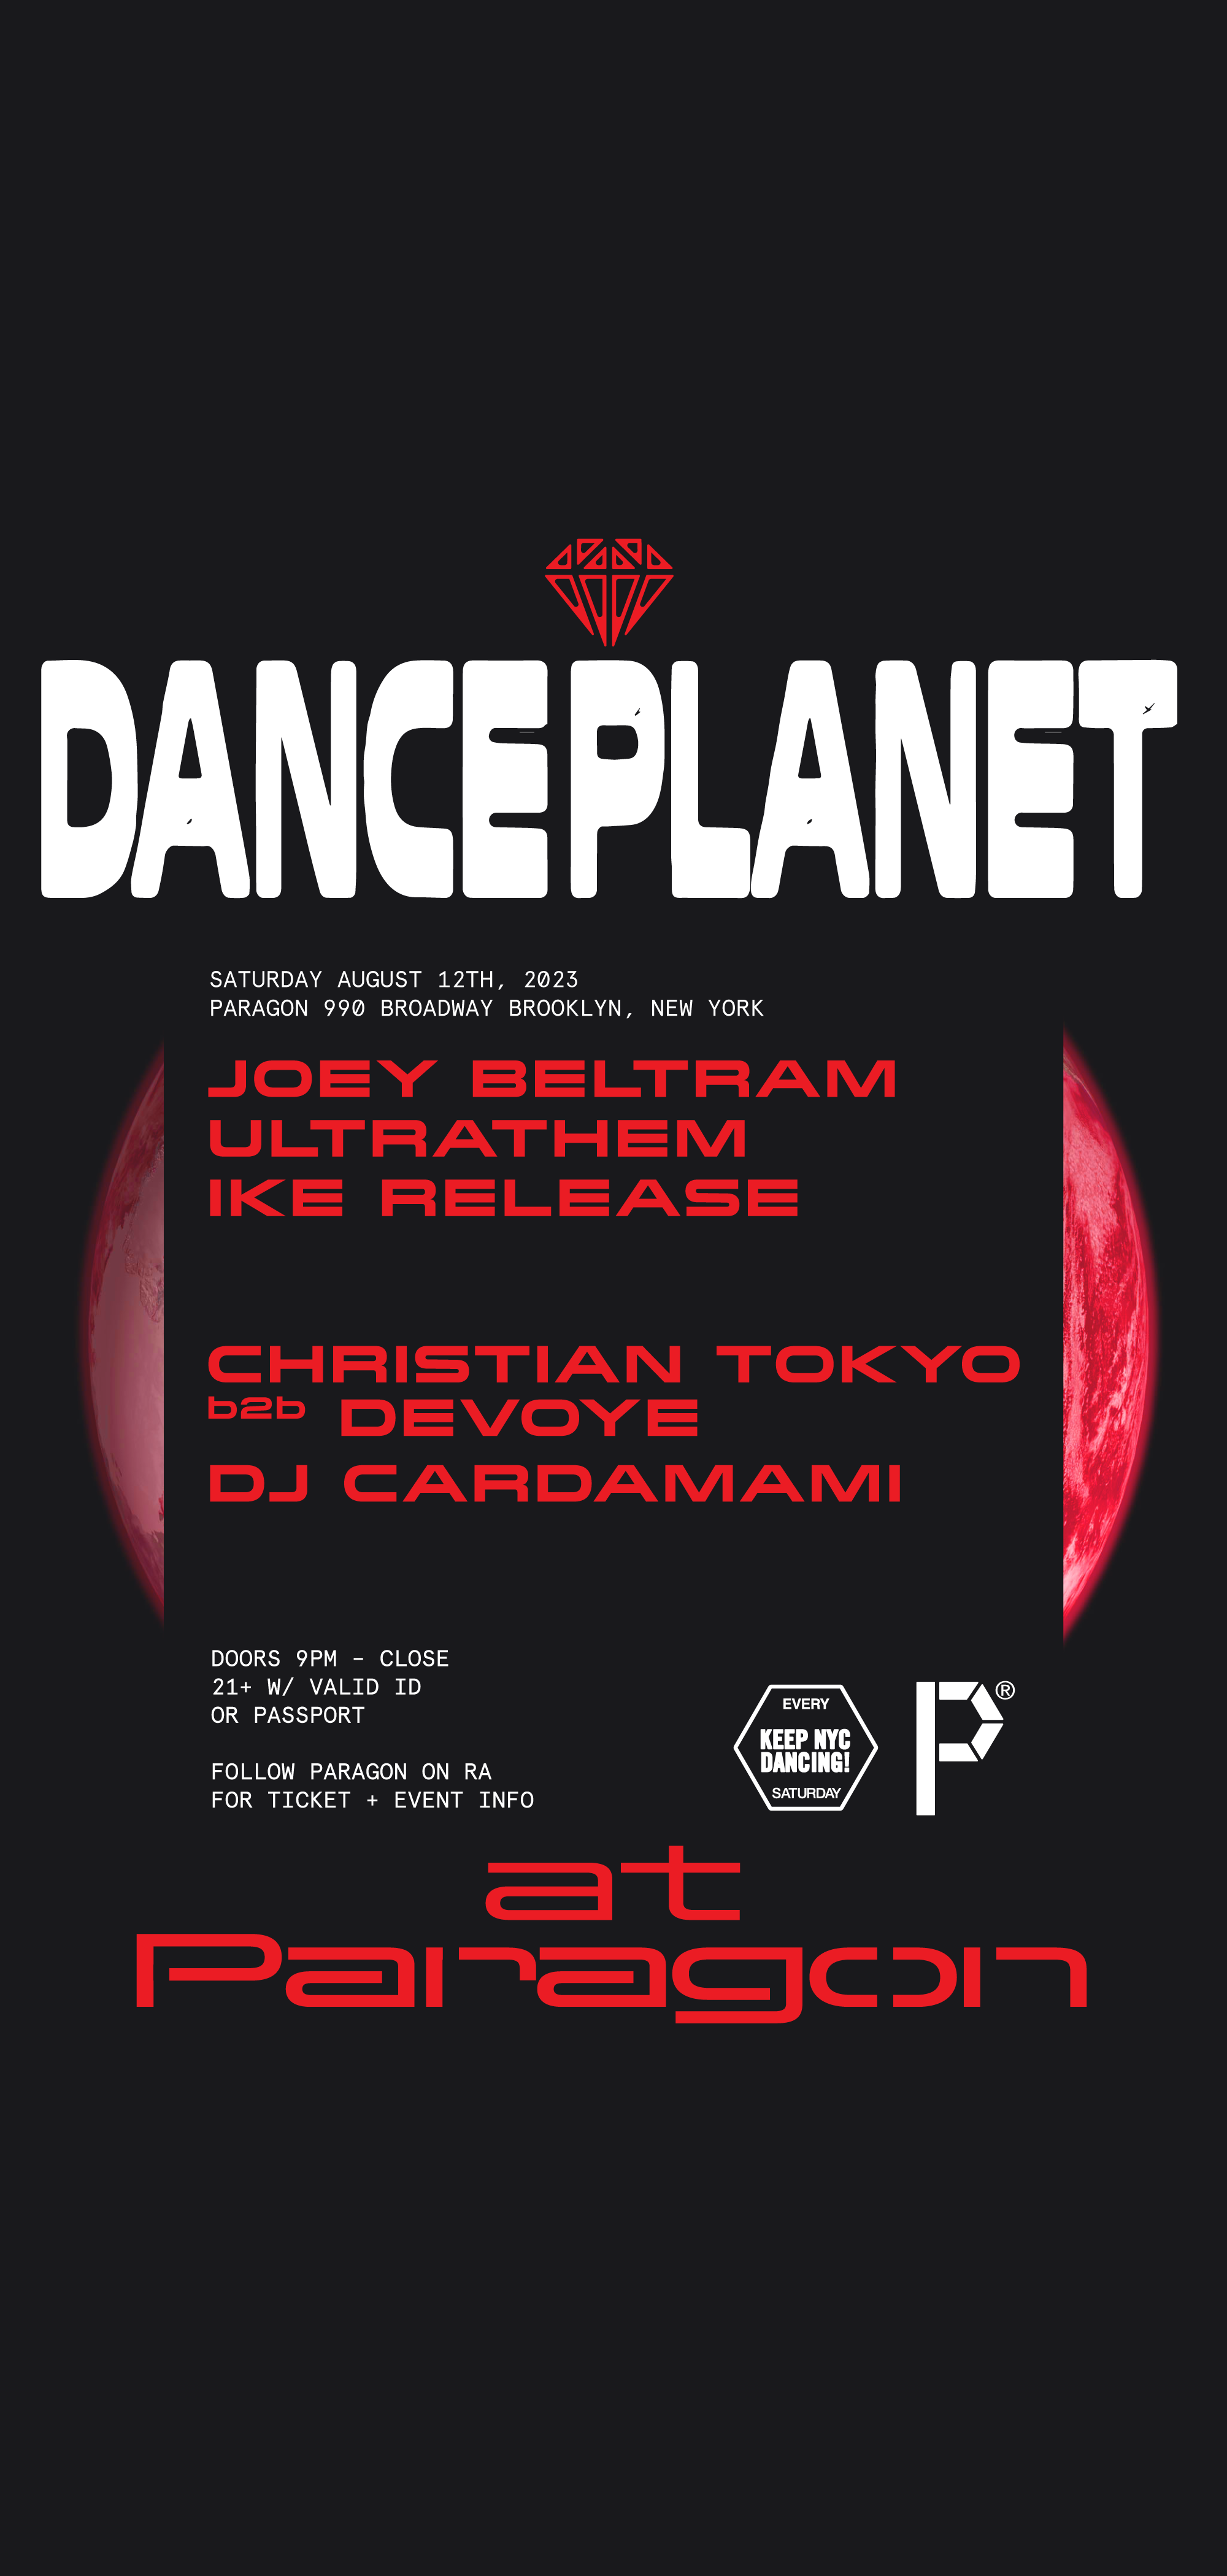 DANCE PLANET: Joey Beltram, Ultrathem, Ike Release + Christian Tokyo b2b Devoye - Página frontal